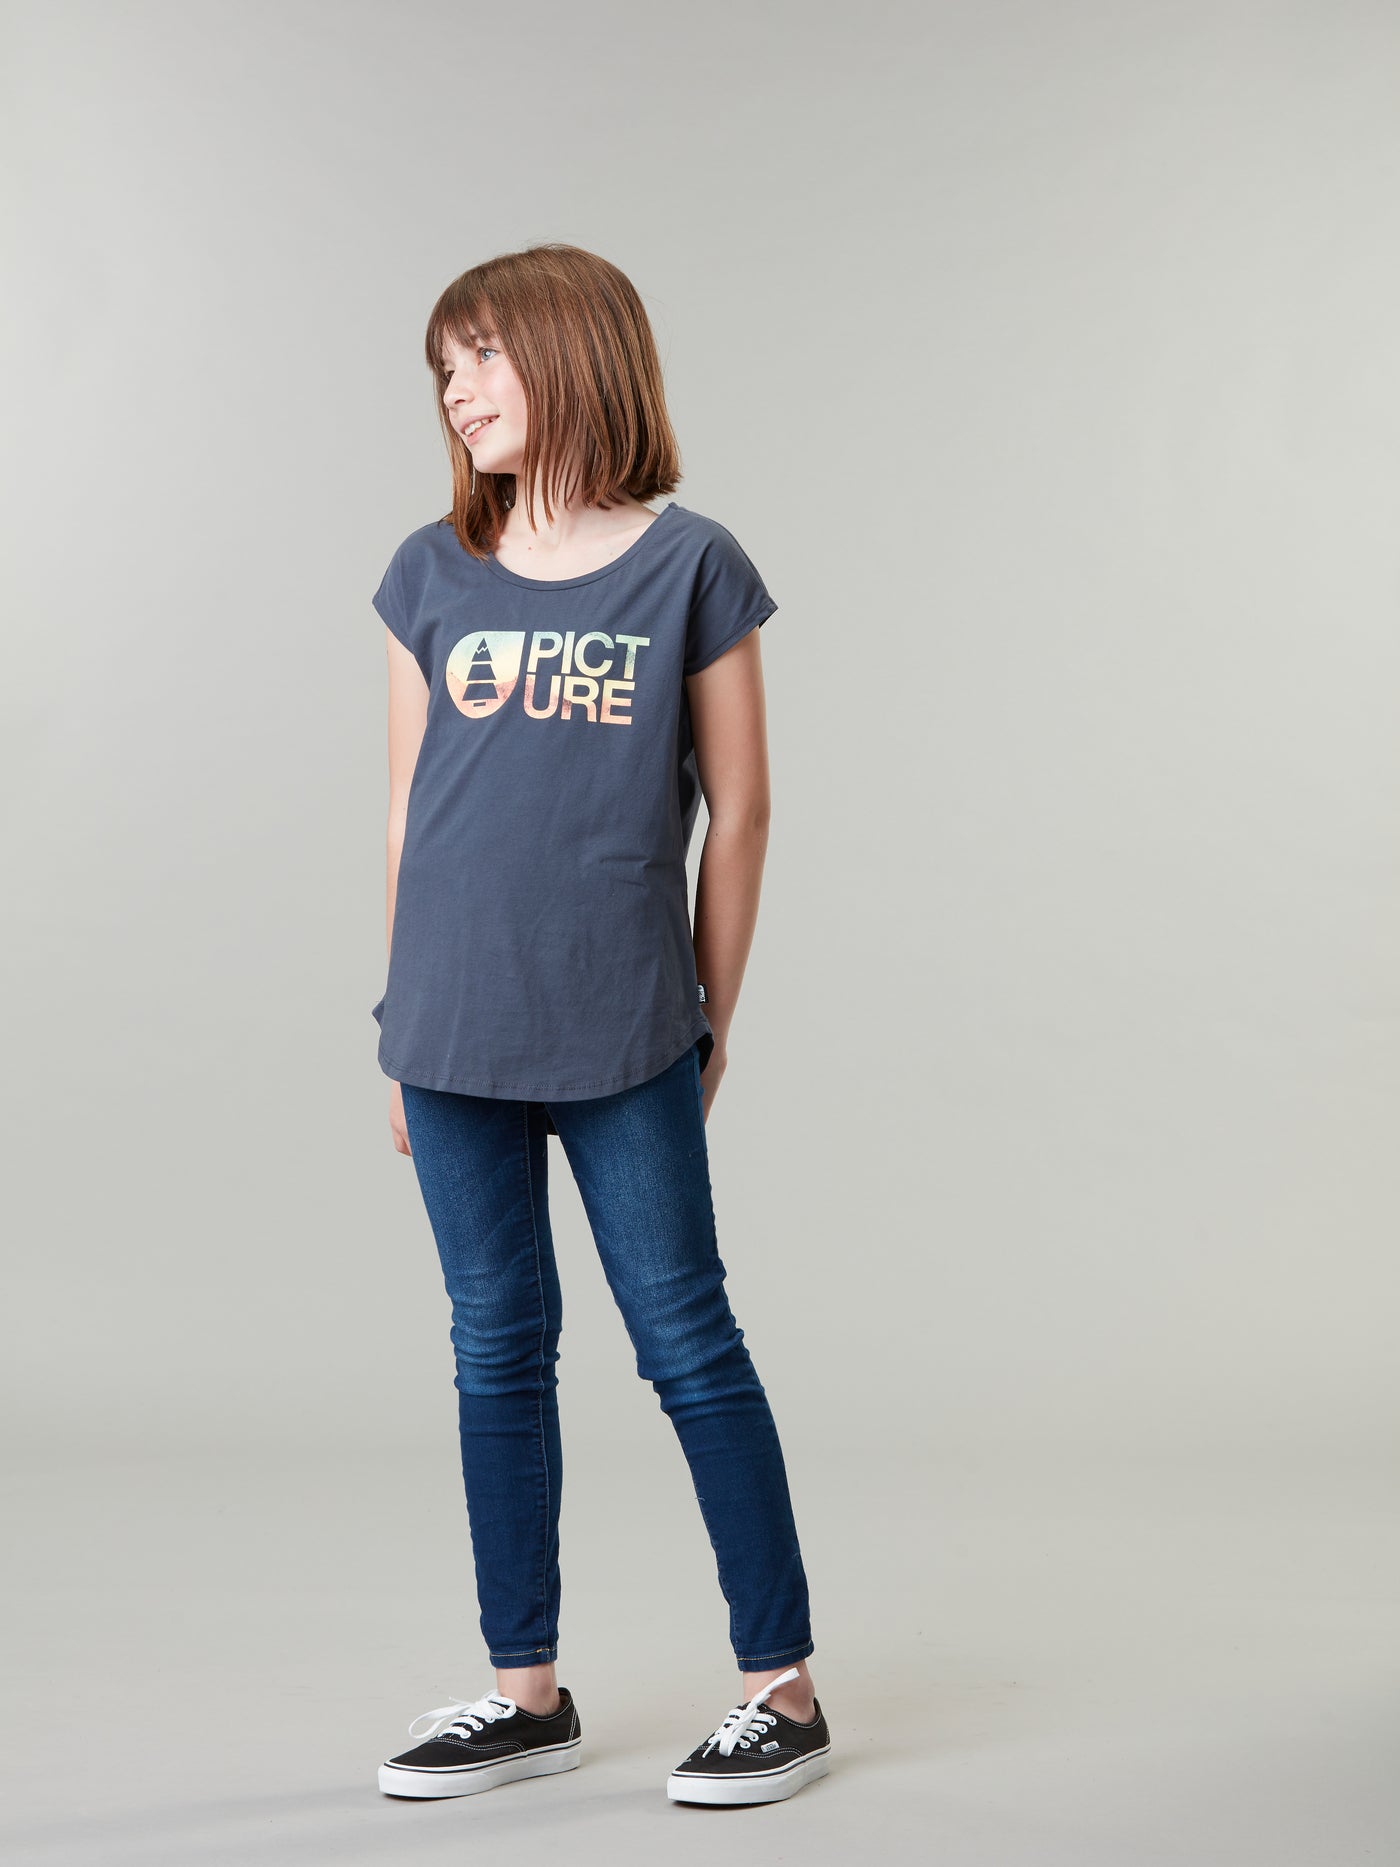 Picture Organicin lasten ja nuorten t-paita värissä India ink tytön päällä hieman sivuttain kuvattuna